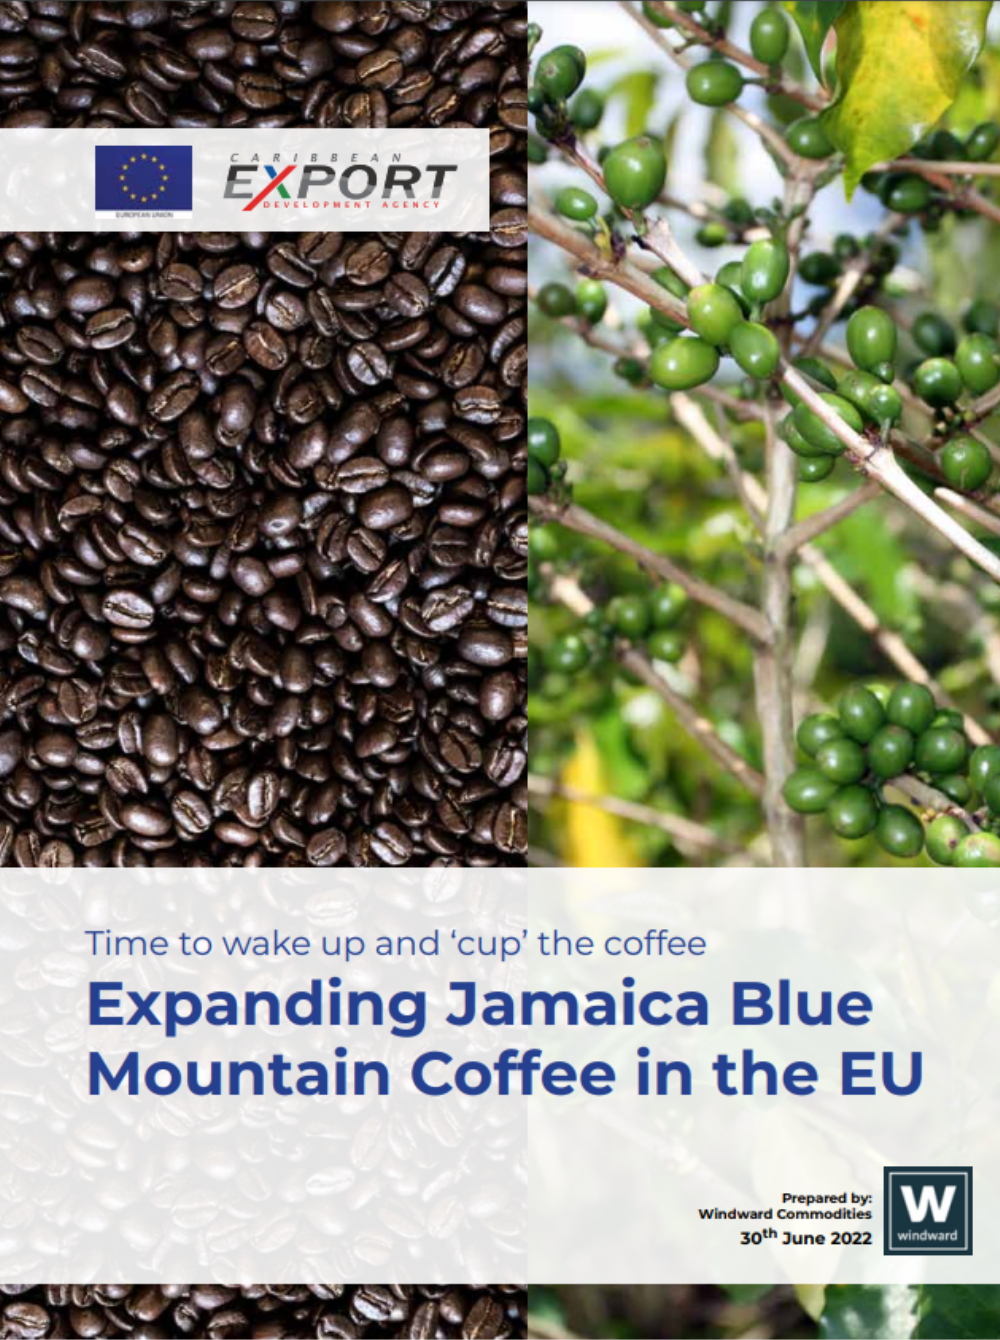 Expansion du café Jamaica Blue Mountain dans l’UE